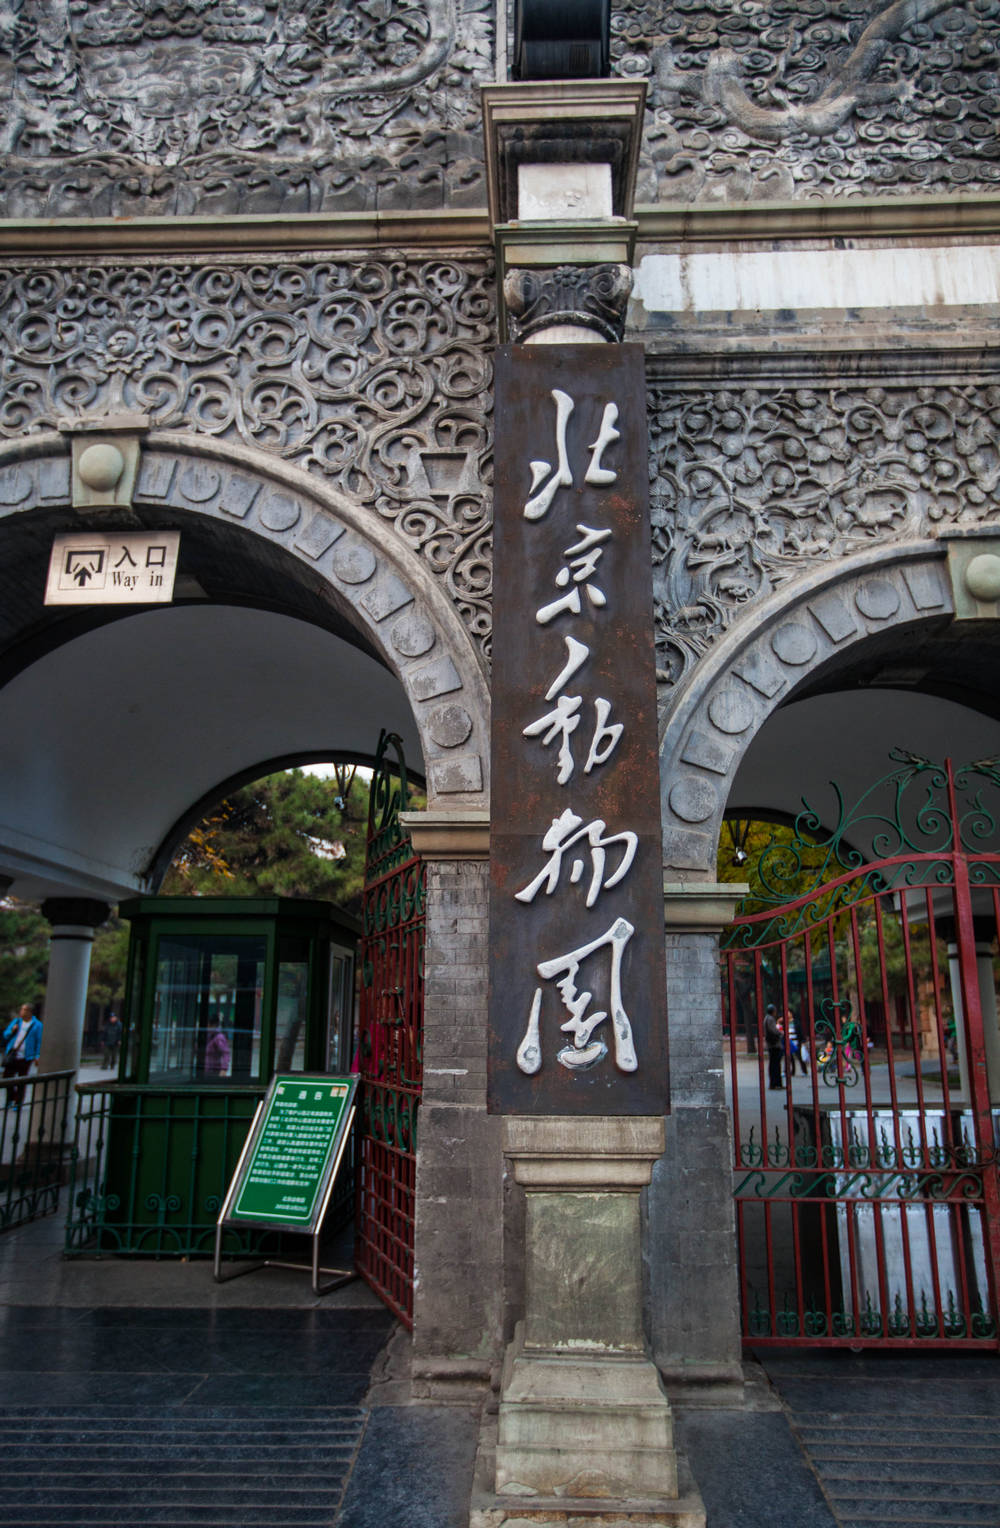 百年砖雕大门退休,北京动物园这五个字是谁写的?